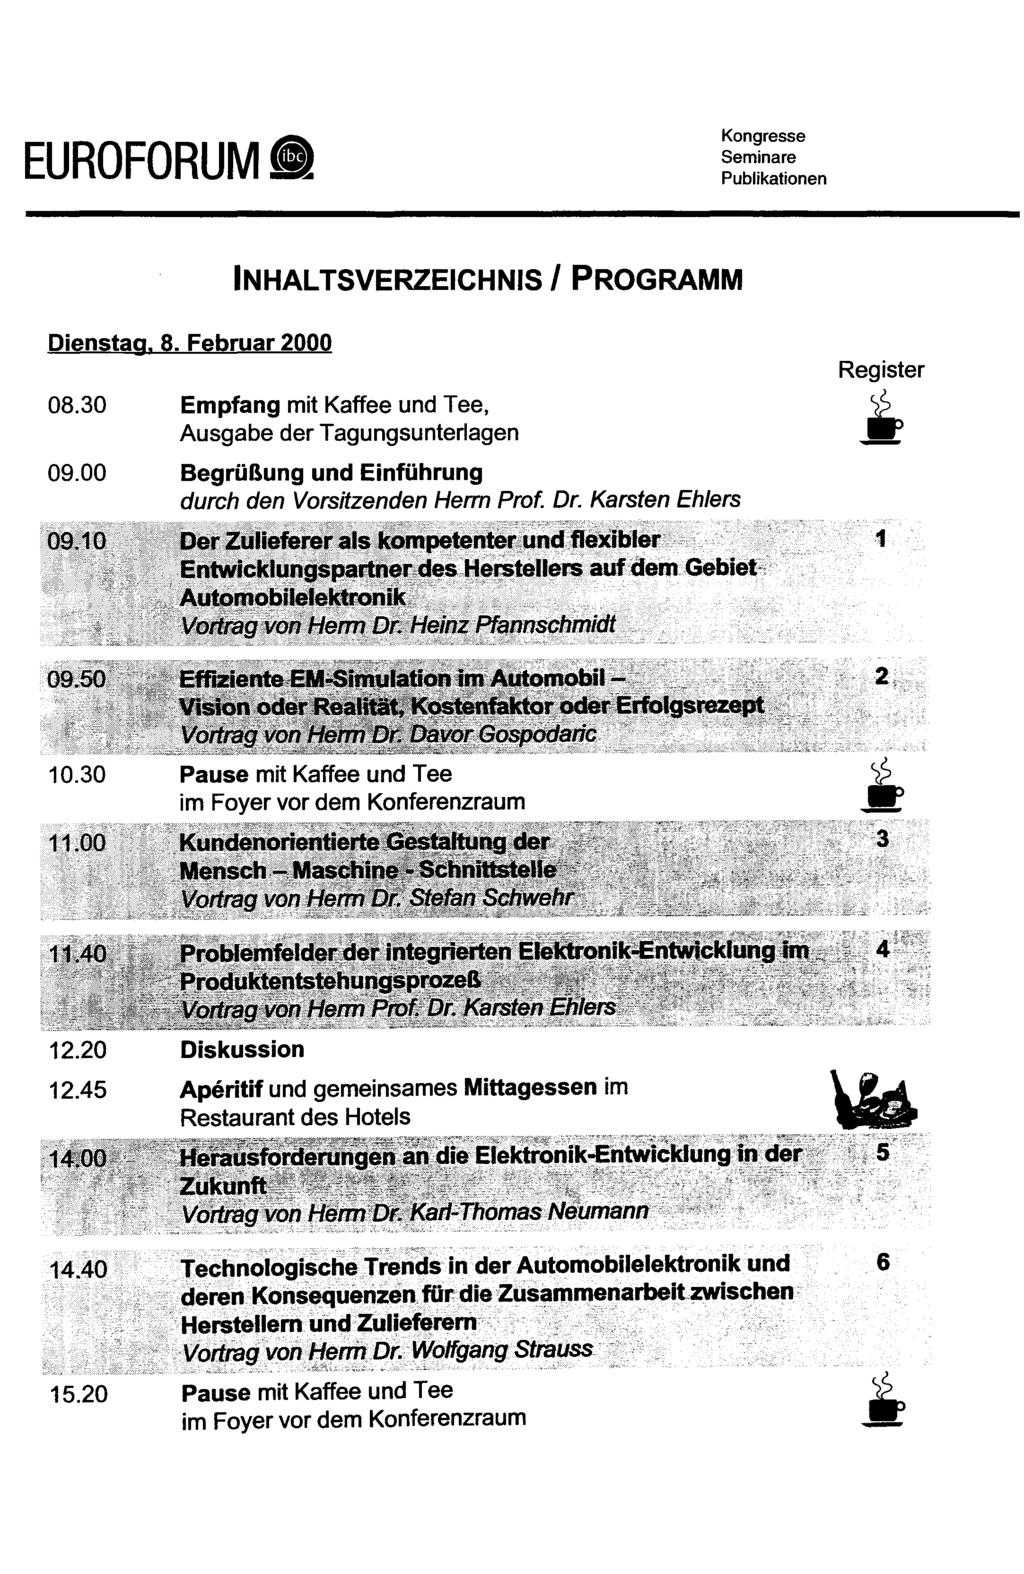 EUROFORUM Dienstag. 8. Februar 2000 INHALTSVERZEICHNIS / PROGRAMM Register 08.30 Empfang mit Kaffee und Tee, " Ausgabe der Tagungsunterlagen 09.